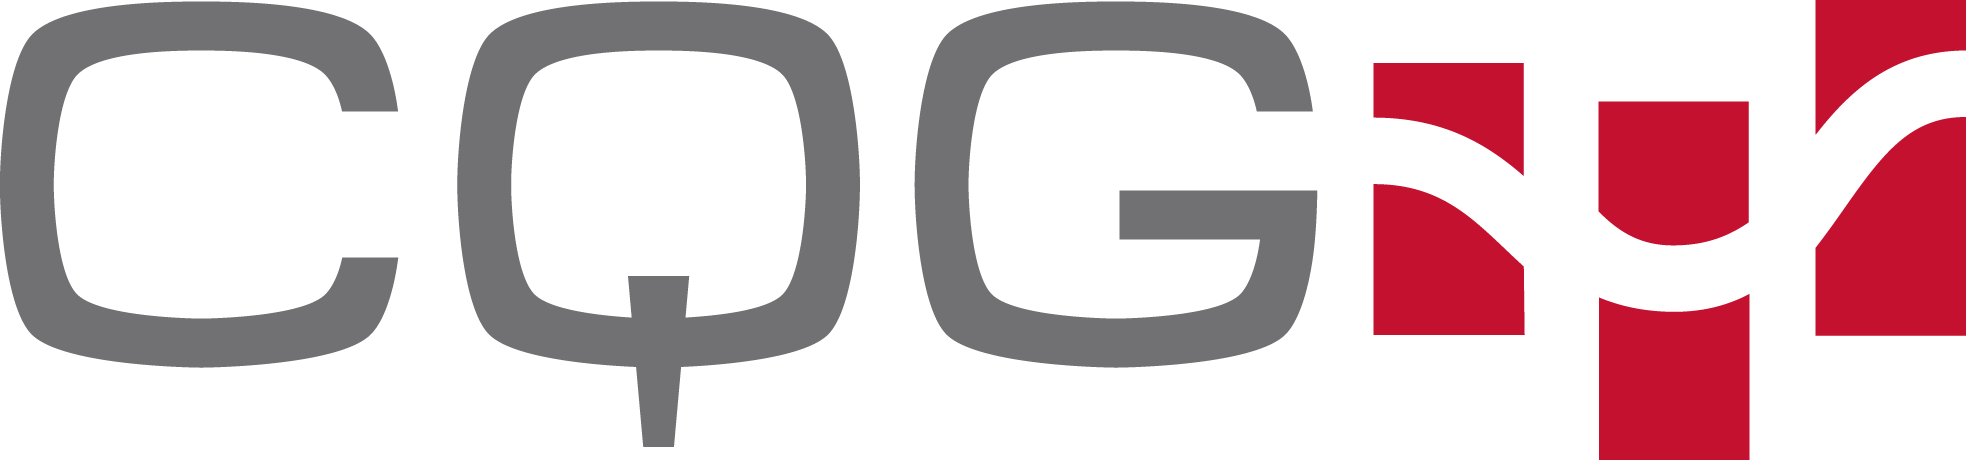 cqg_logo_color